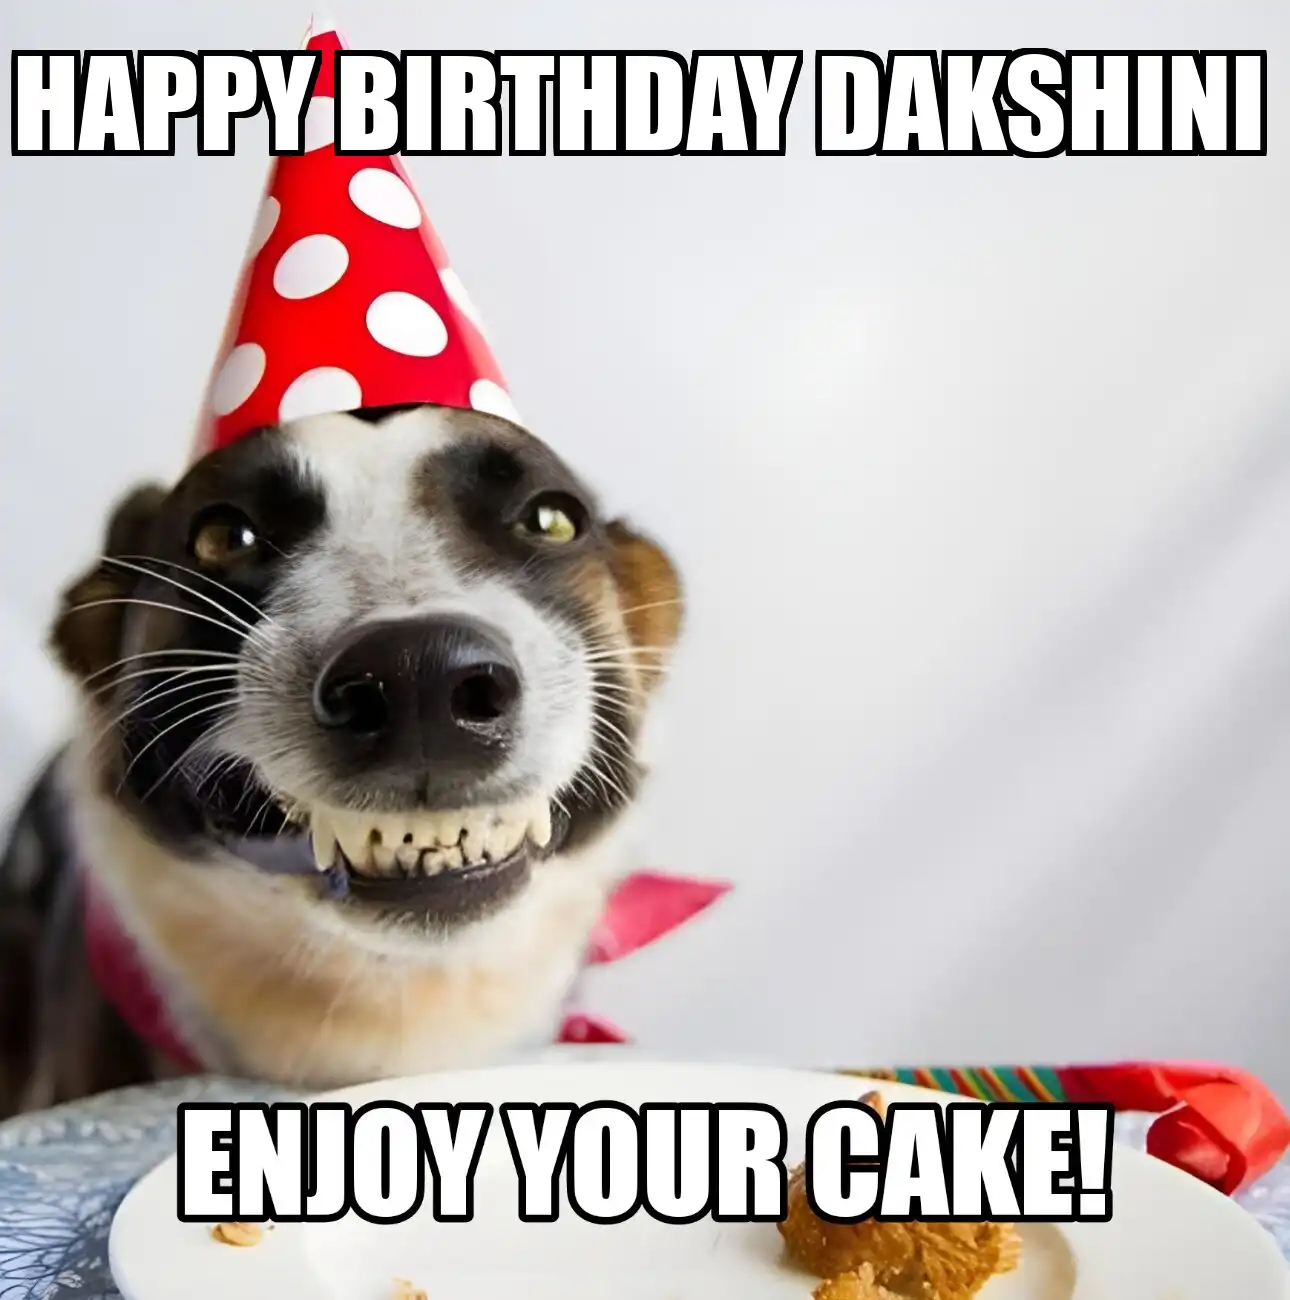 Happy Birthday Dakshini Enjoy Your Cake Dog Meme